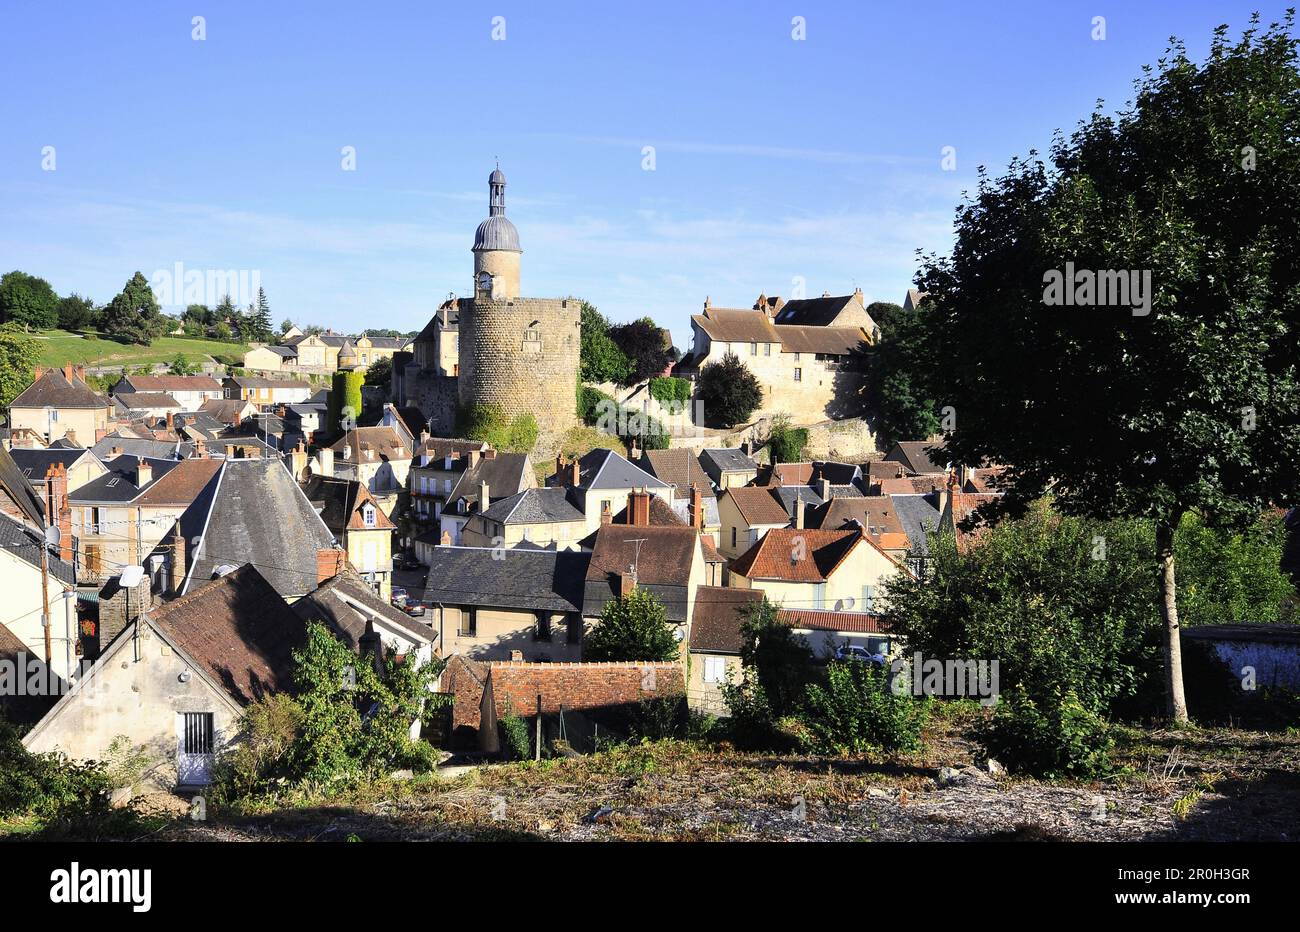 View of the village and the castle, Bourbon L'Archambault, Bourbonnais, Auvergne, France, Europe Stock Photo